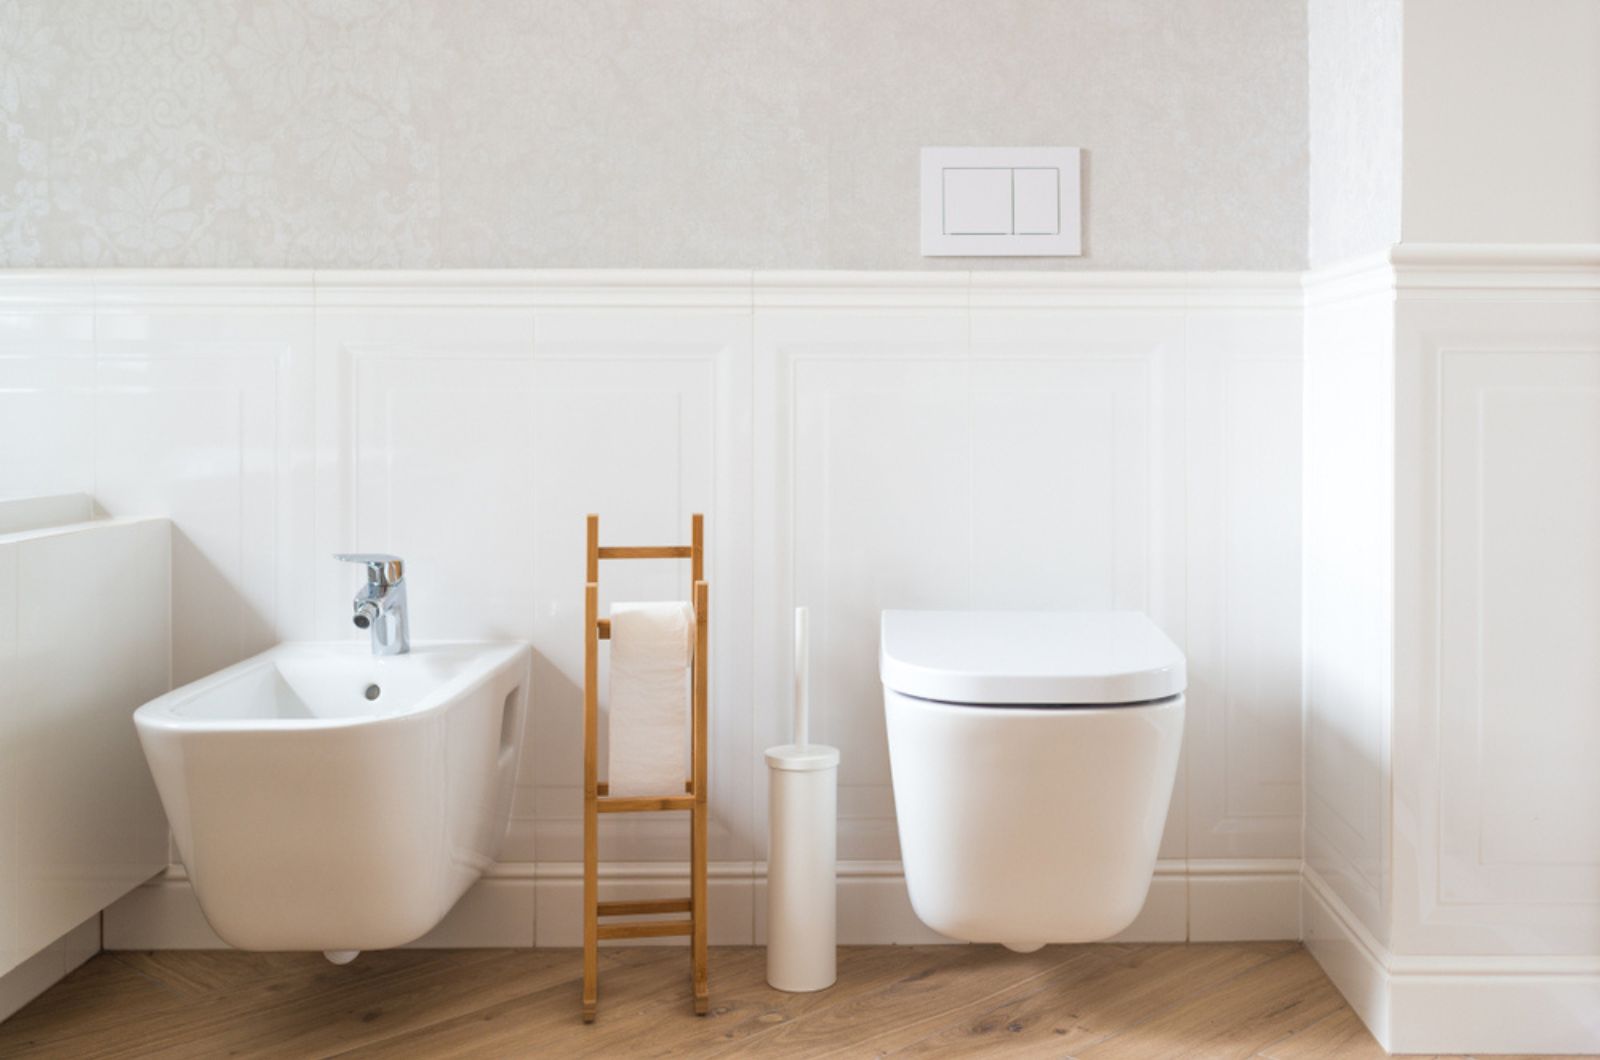 WC e bidet in ceramica bianca in un bagno moderno